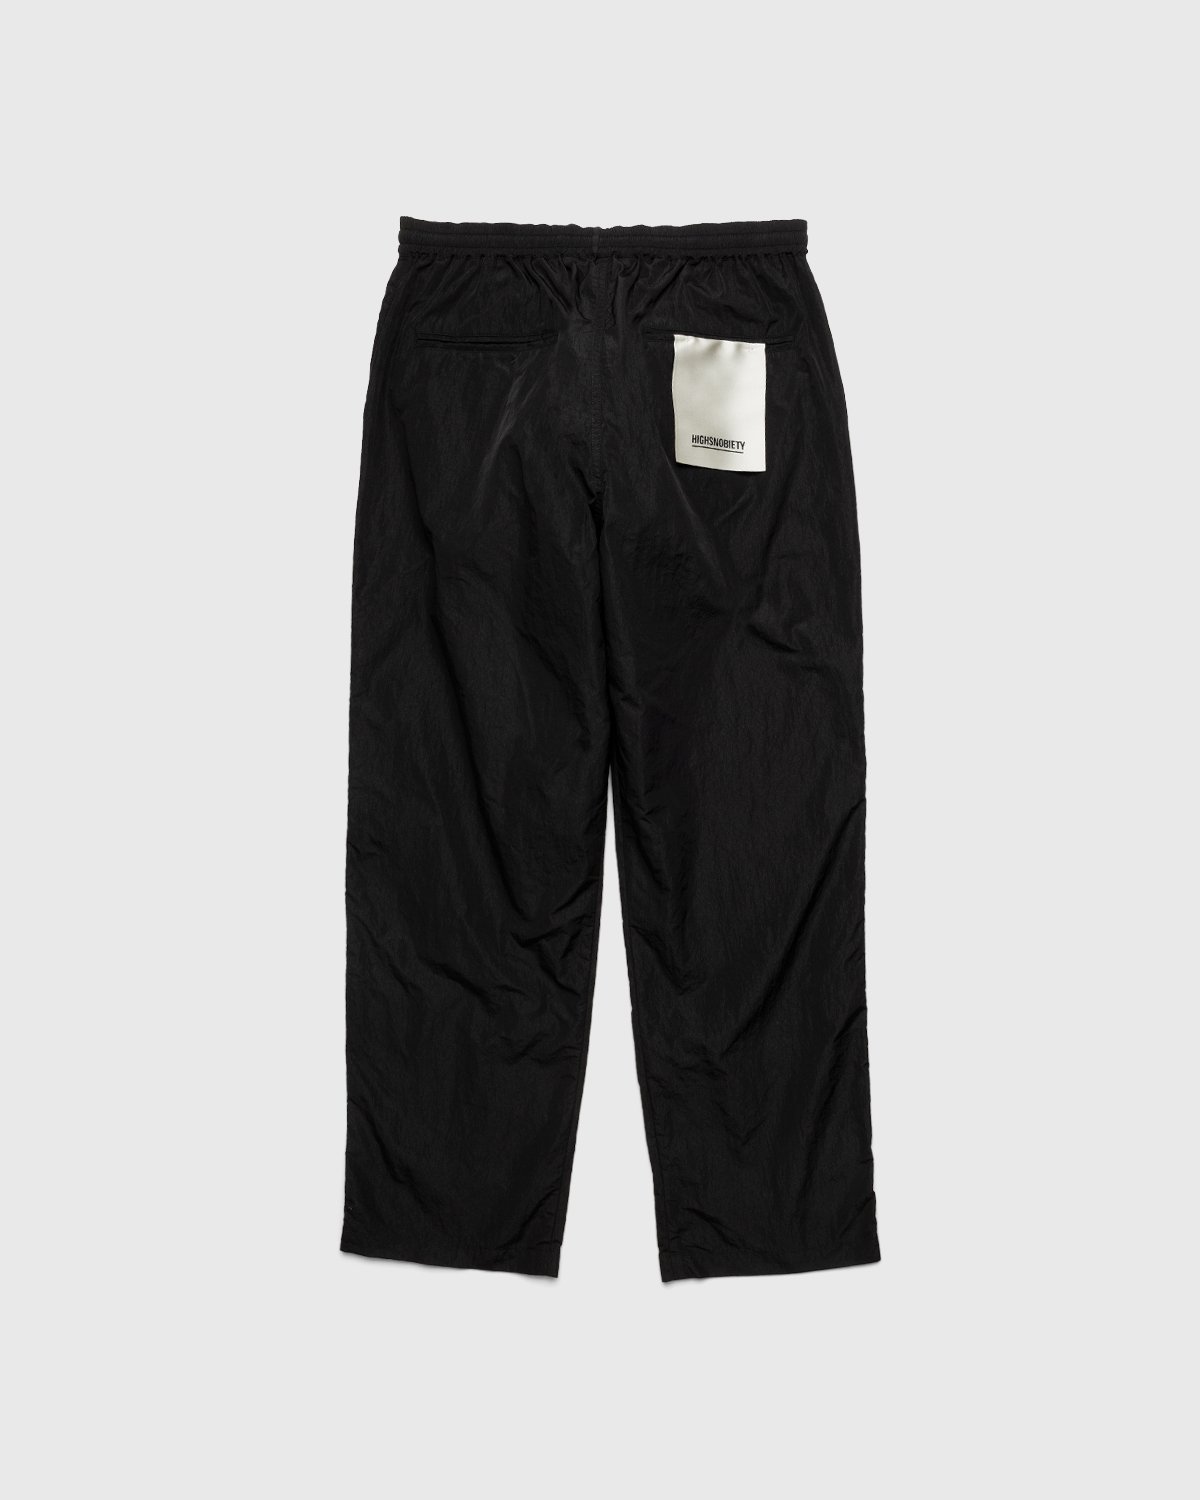 Highsnobiety - Crepe Nylon Elastic Pants Black - Clothing - Black - Image 2